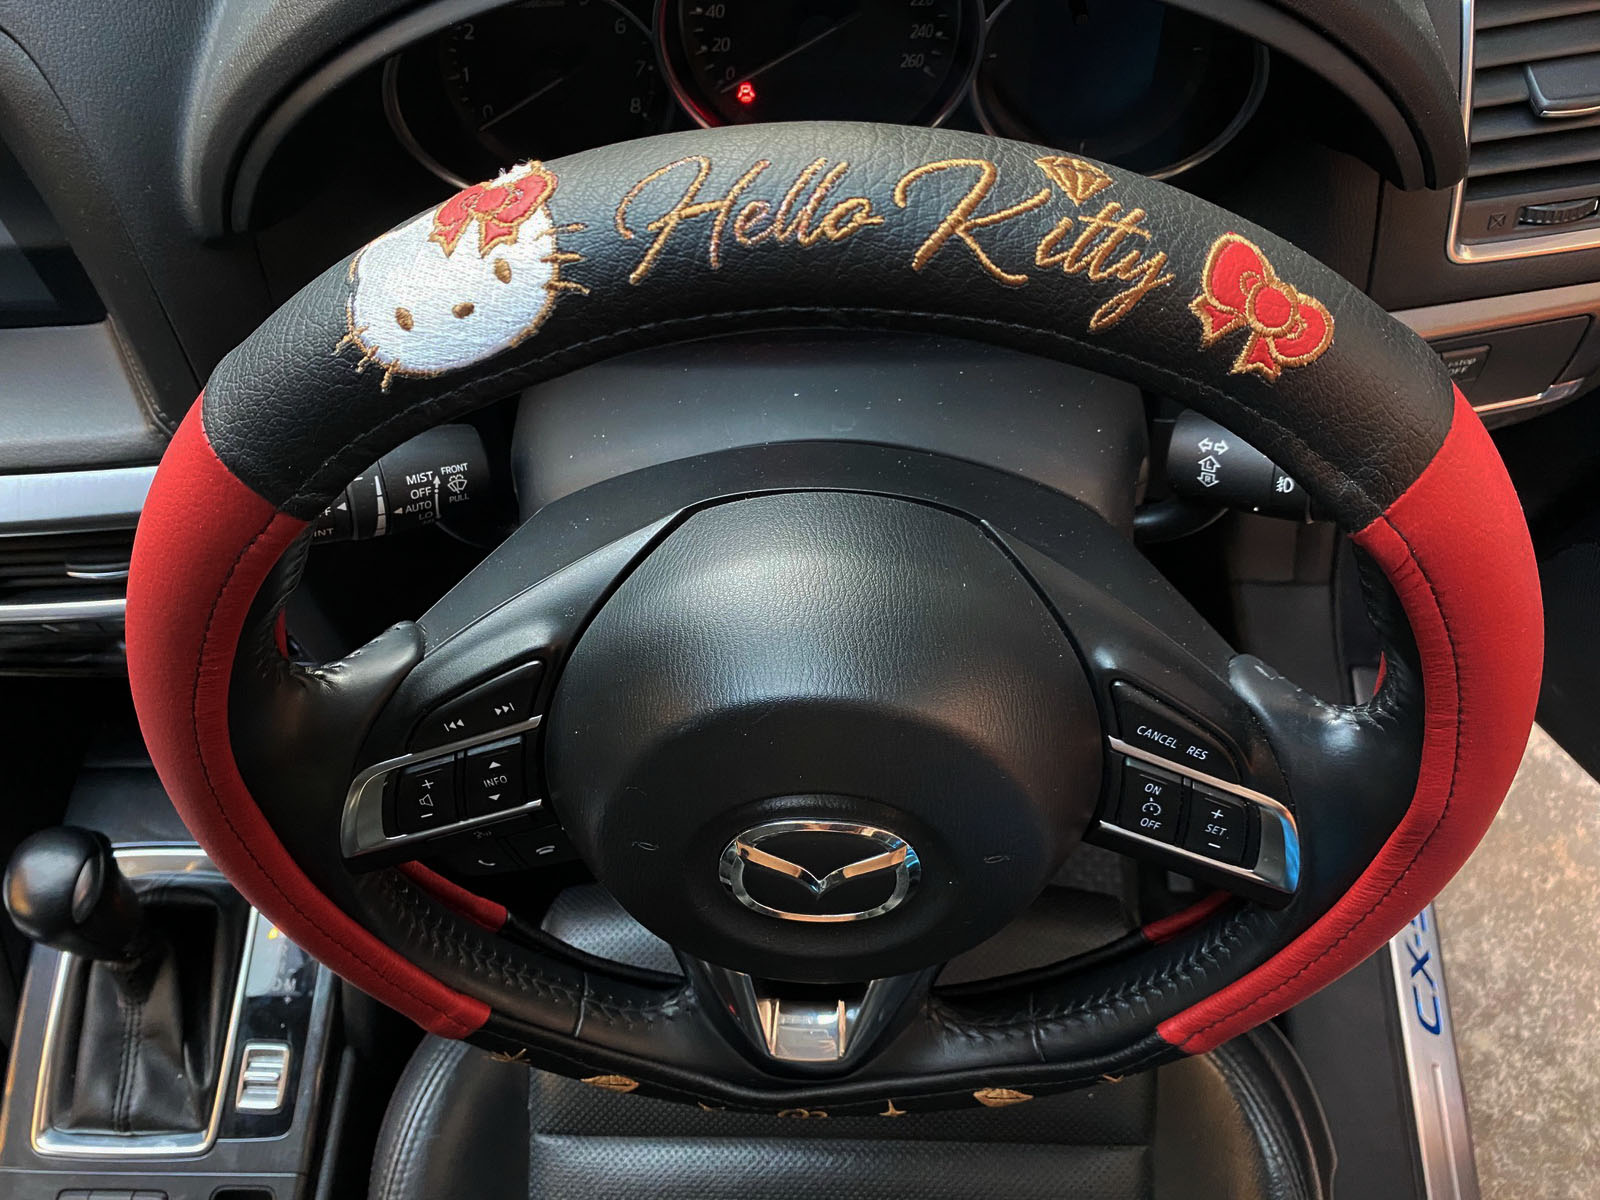 ลิขสิทธิ์แท้ เฮลโล คิตตี้ ที่หุ้มพวงมาลัย หนังเทียม ตกแต่งรถยนต์ สีดำแดง Hello Kitty Sanrio Faux Leather Car Steering Wheel Cover Black